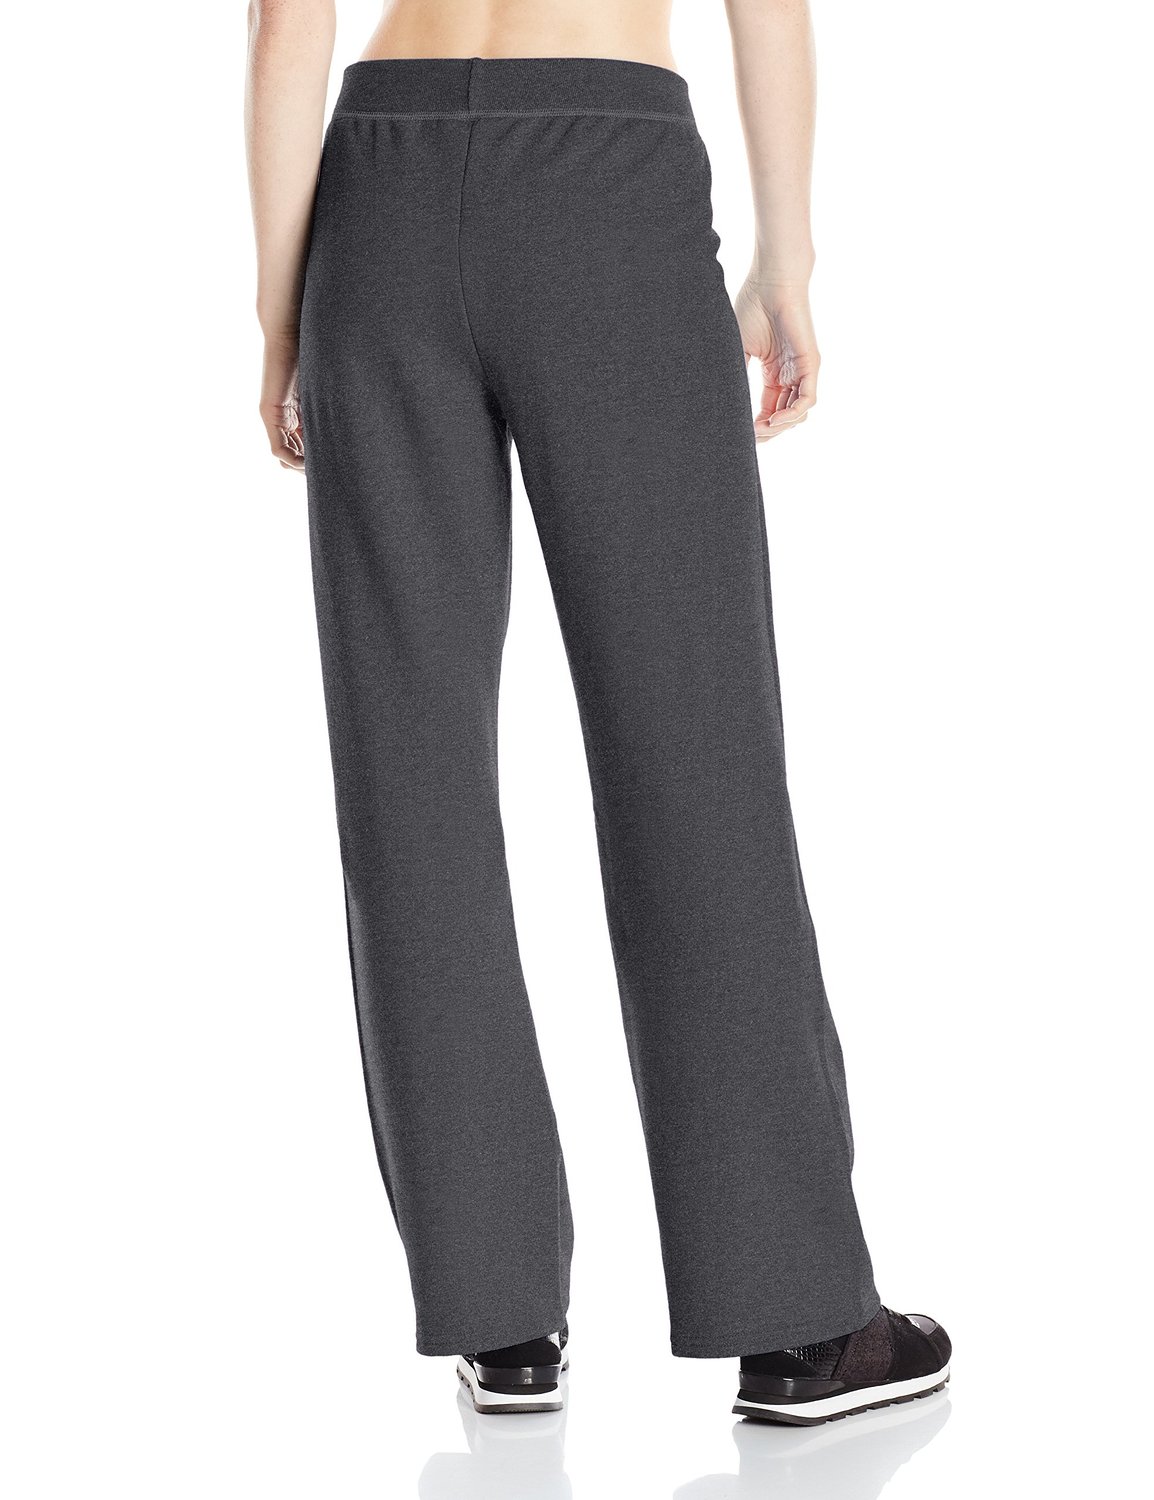 Hanes ComfortSoft EcoSmart Women's Open Bottom Fleece Sweatpants, Sizes S-XXL and Petite - image 2 of 4